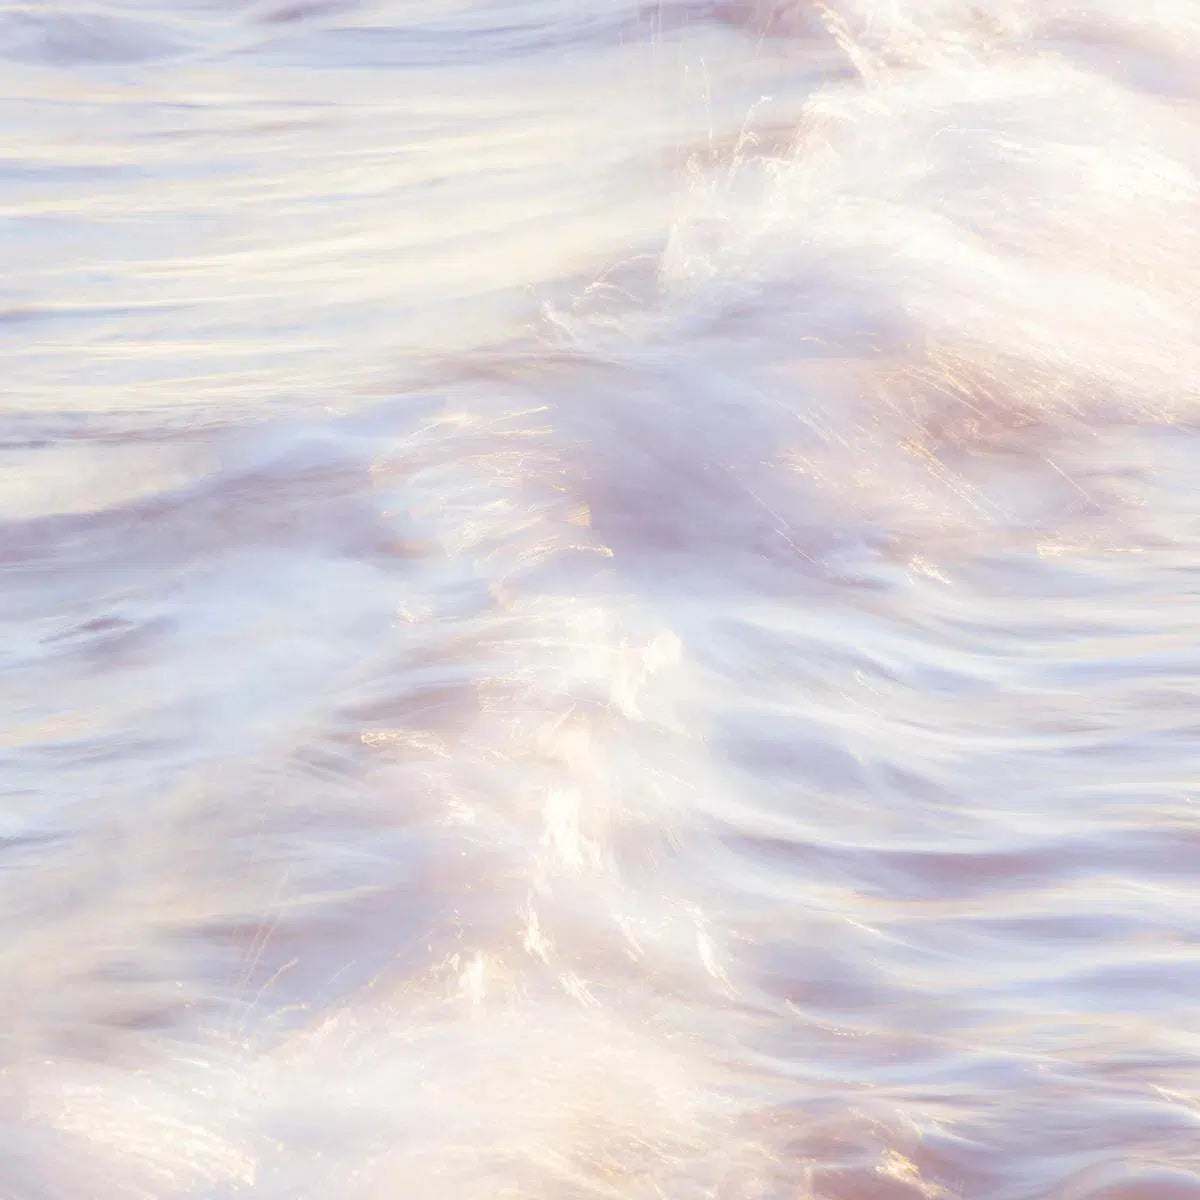 Sakynthos waves 4, by Mats Gustafsson-PurePhoto